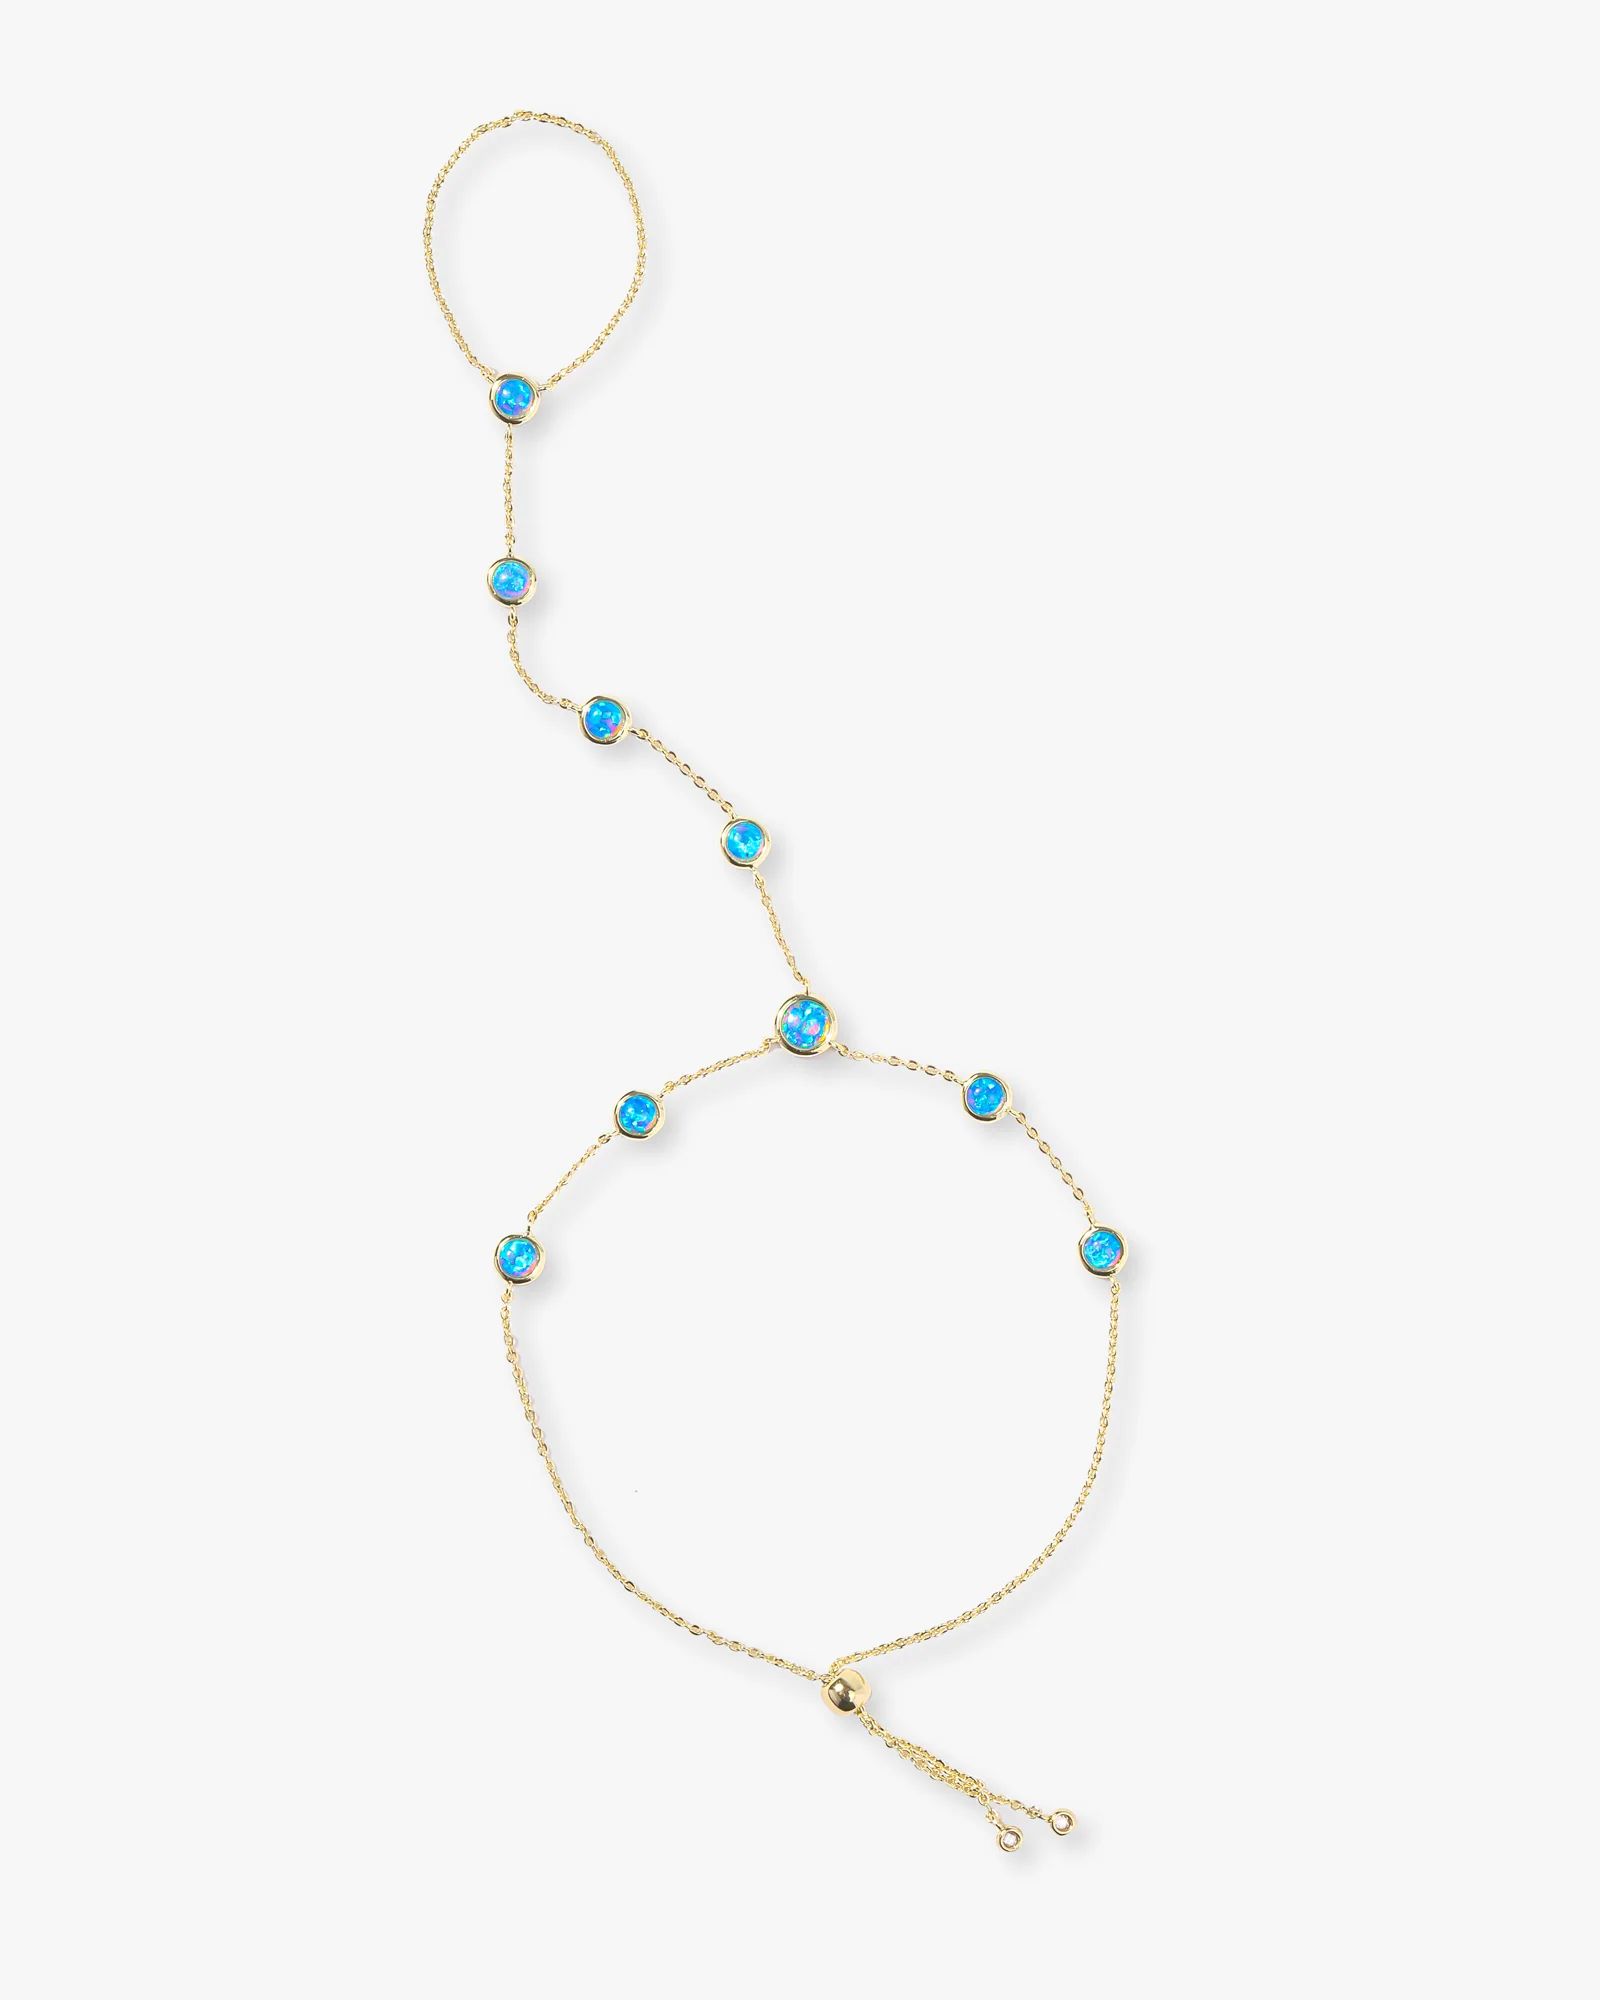 Mojave Opal Hand Chain - Gold|Blue Opal | Melinda Maria